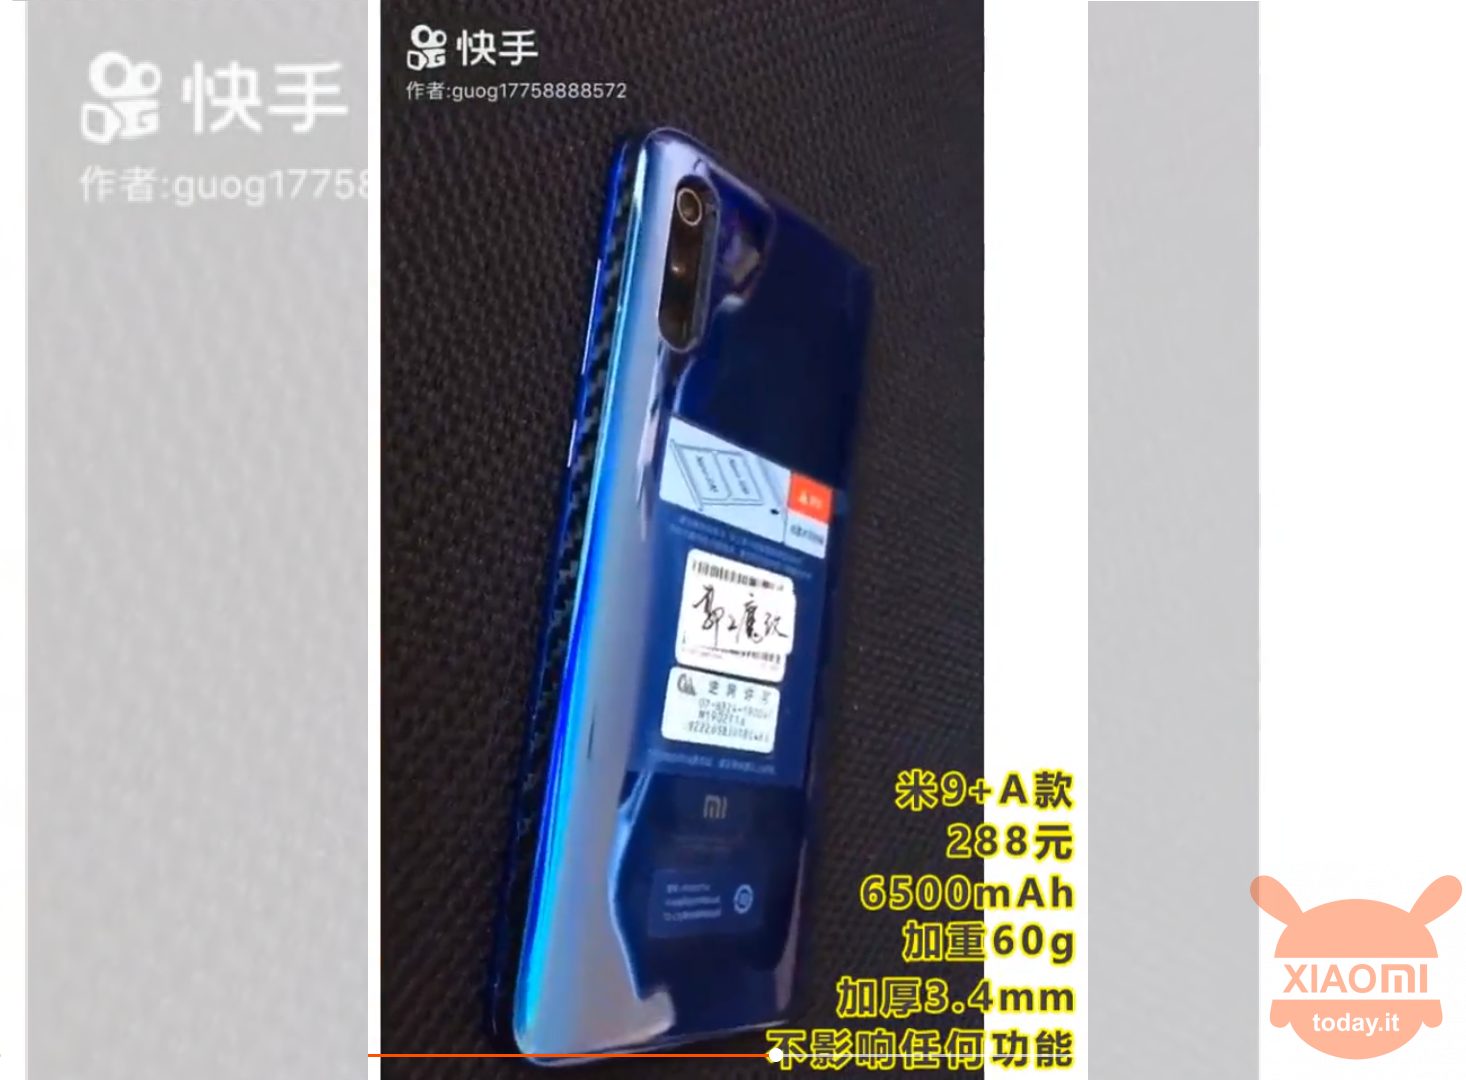 Xiaomi 9 6500mAh הסוללה